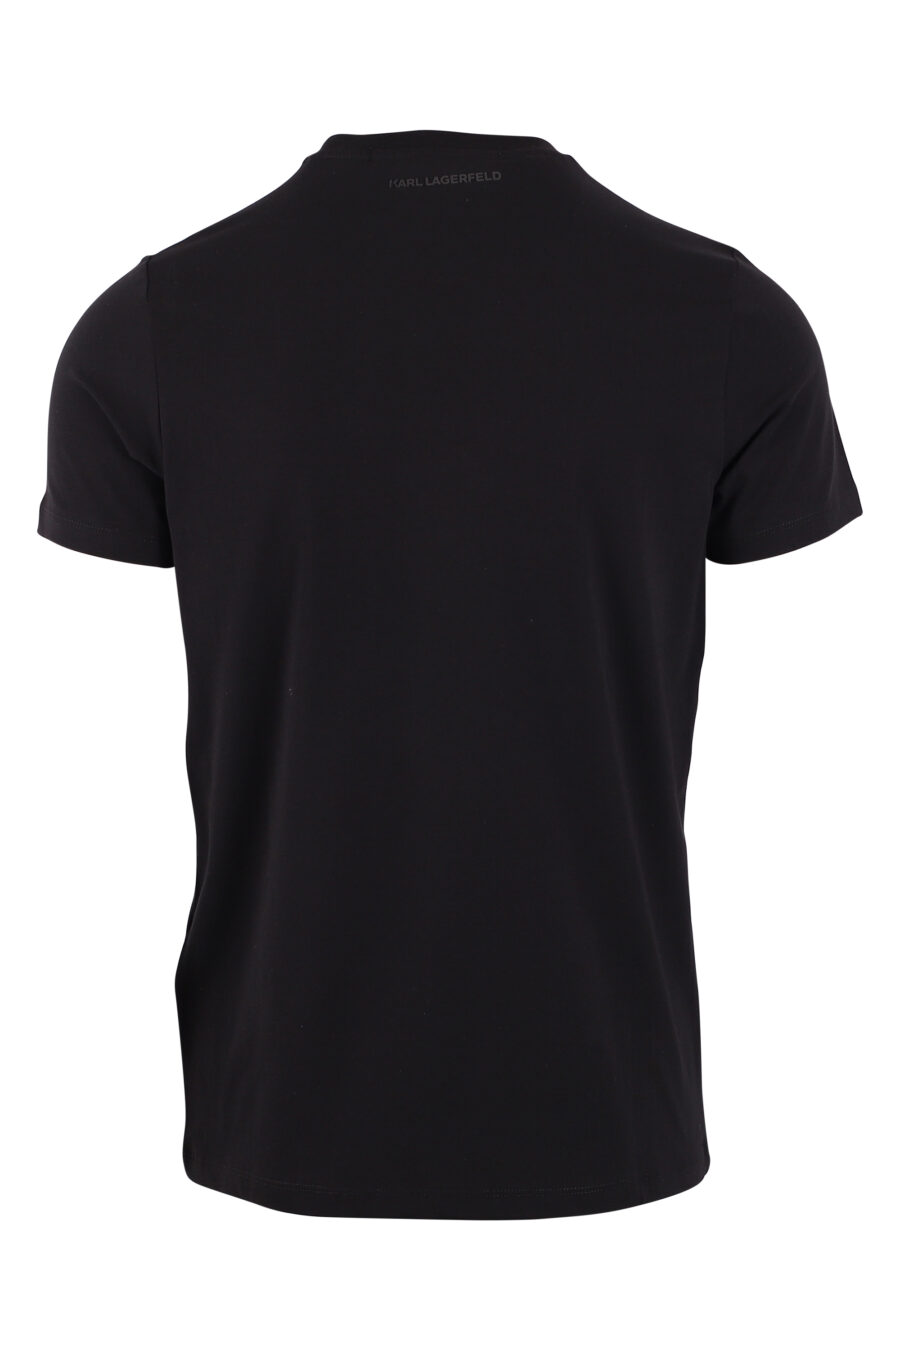 Camiseta negra con maxilogo "karl" en contraste blanco - IMG 9410